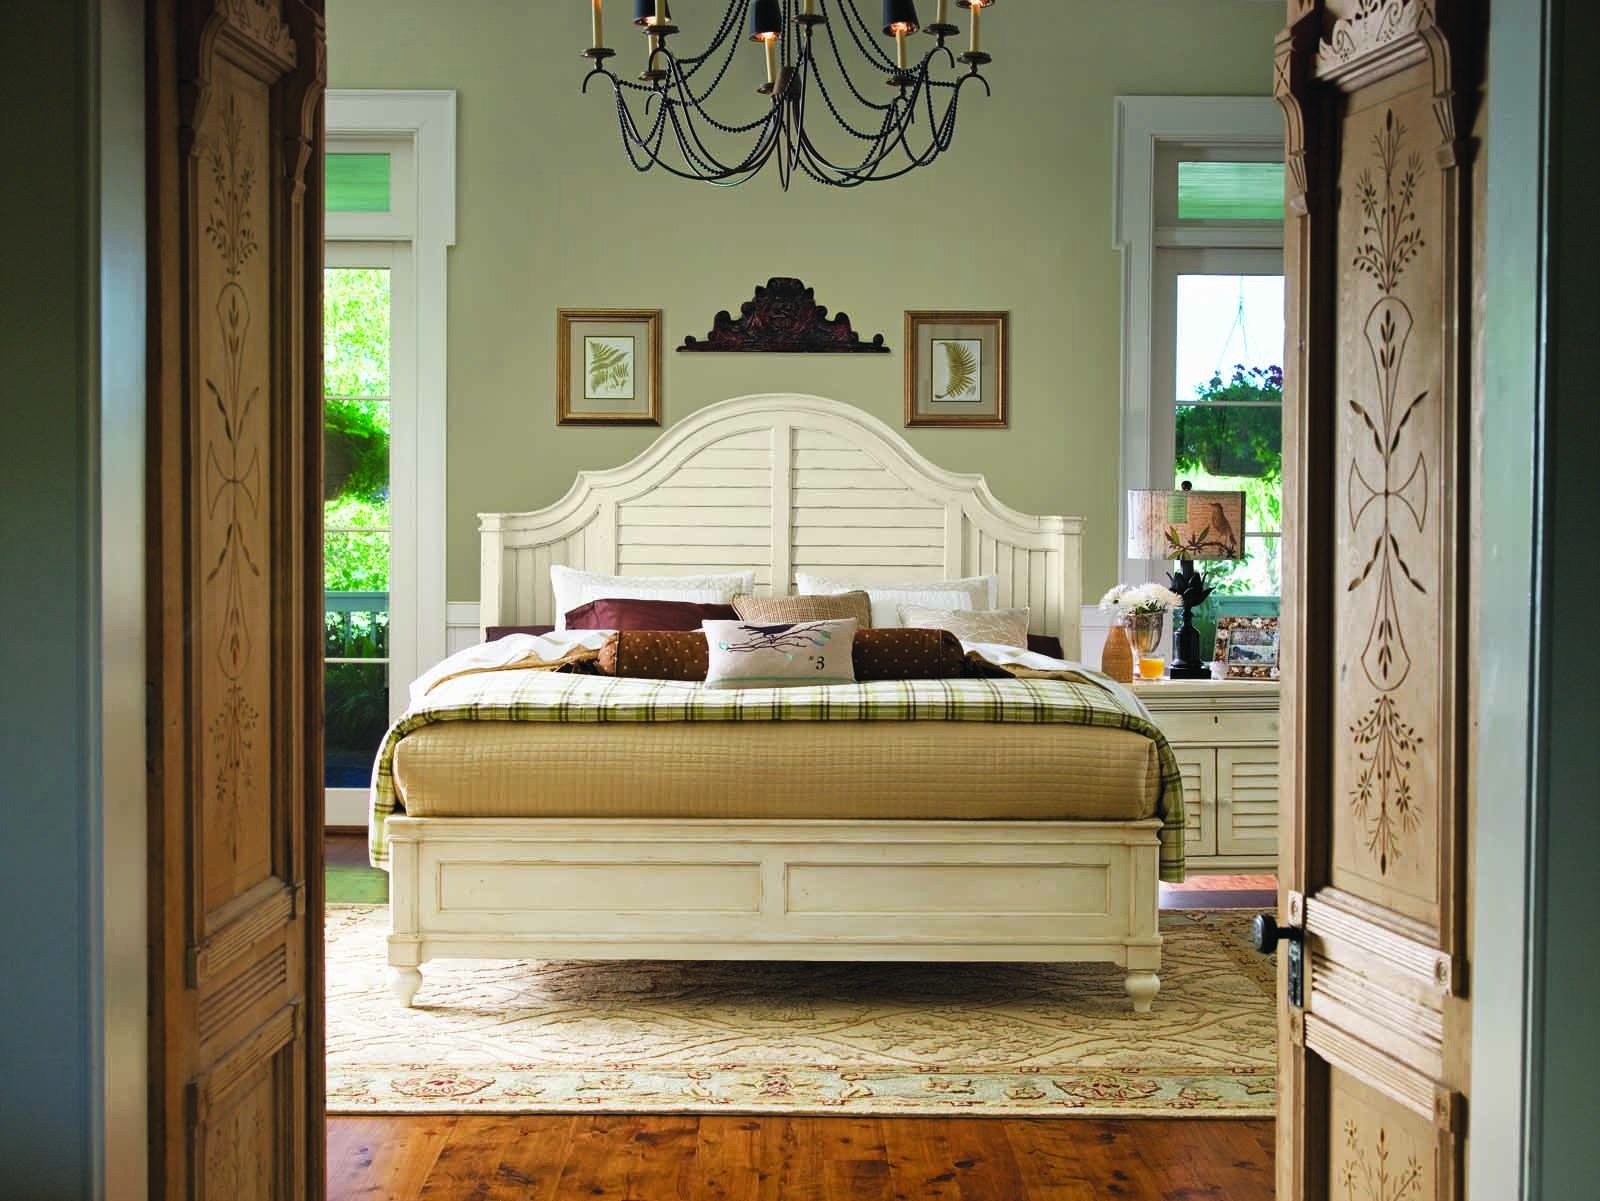 steel magnolia bedroom furniture